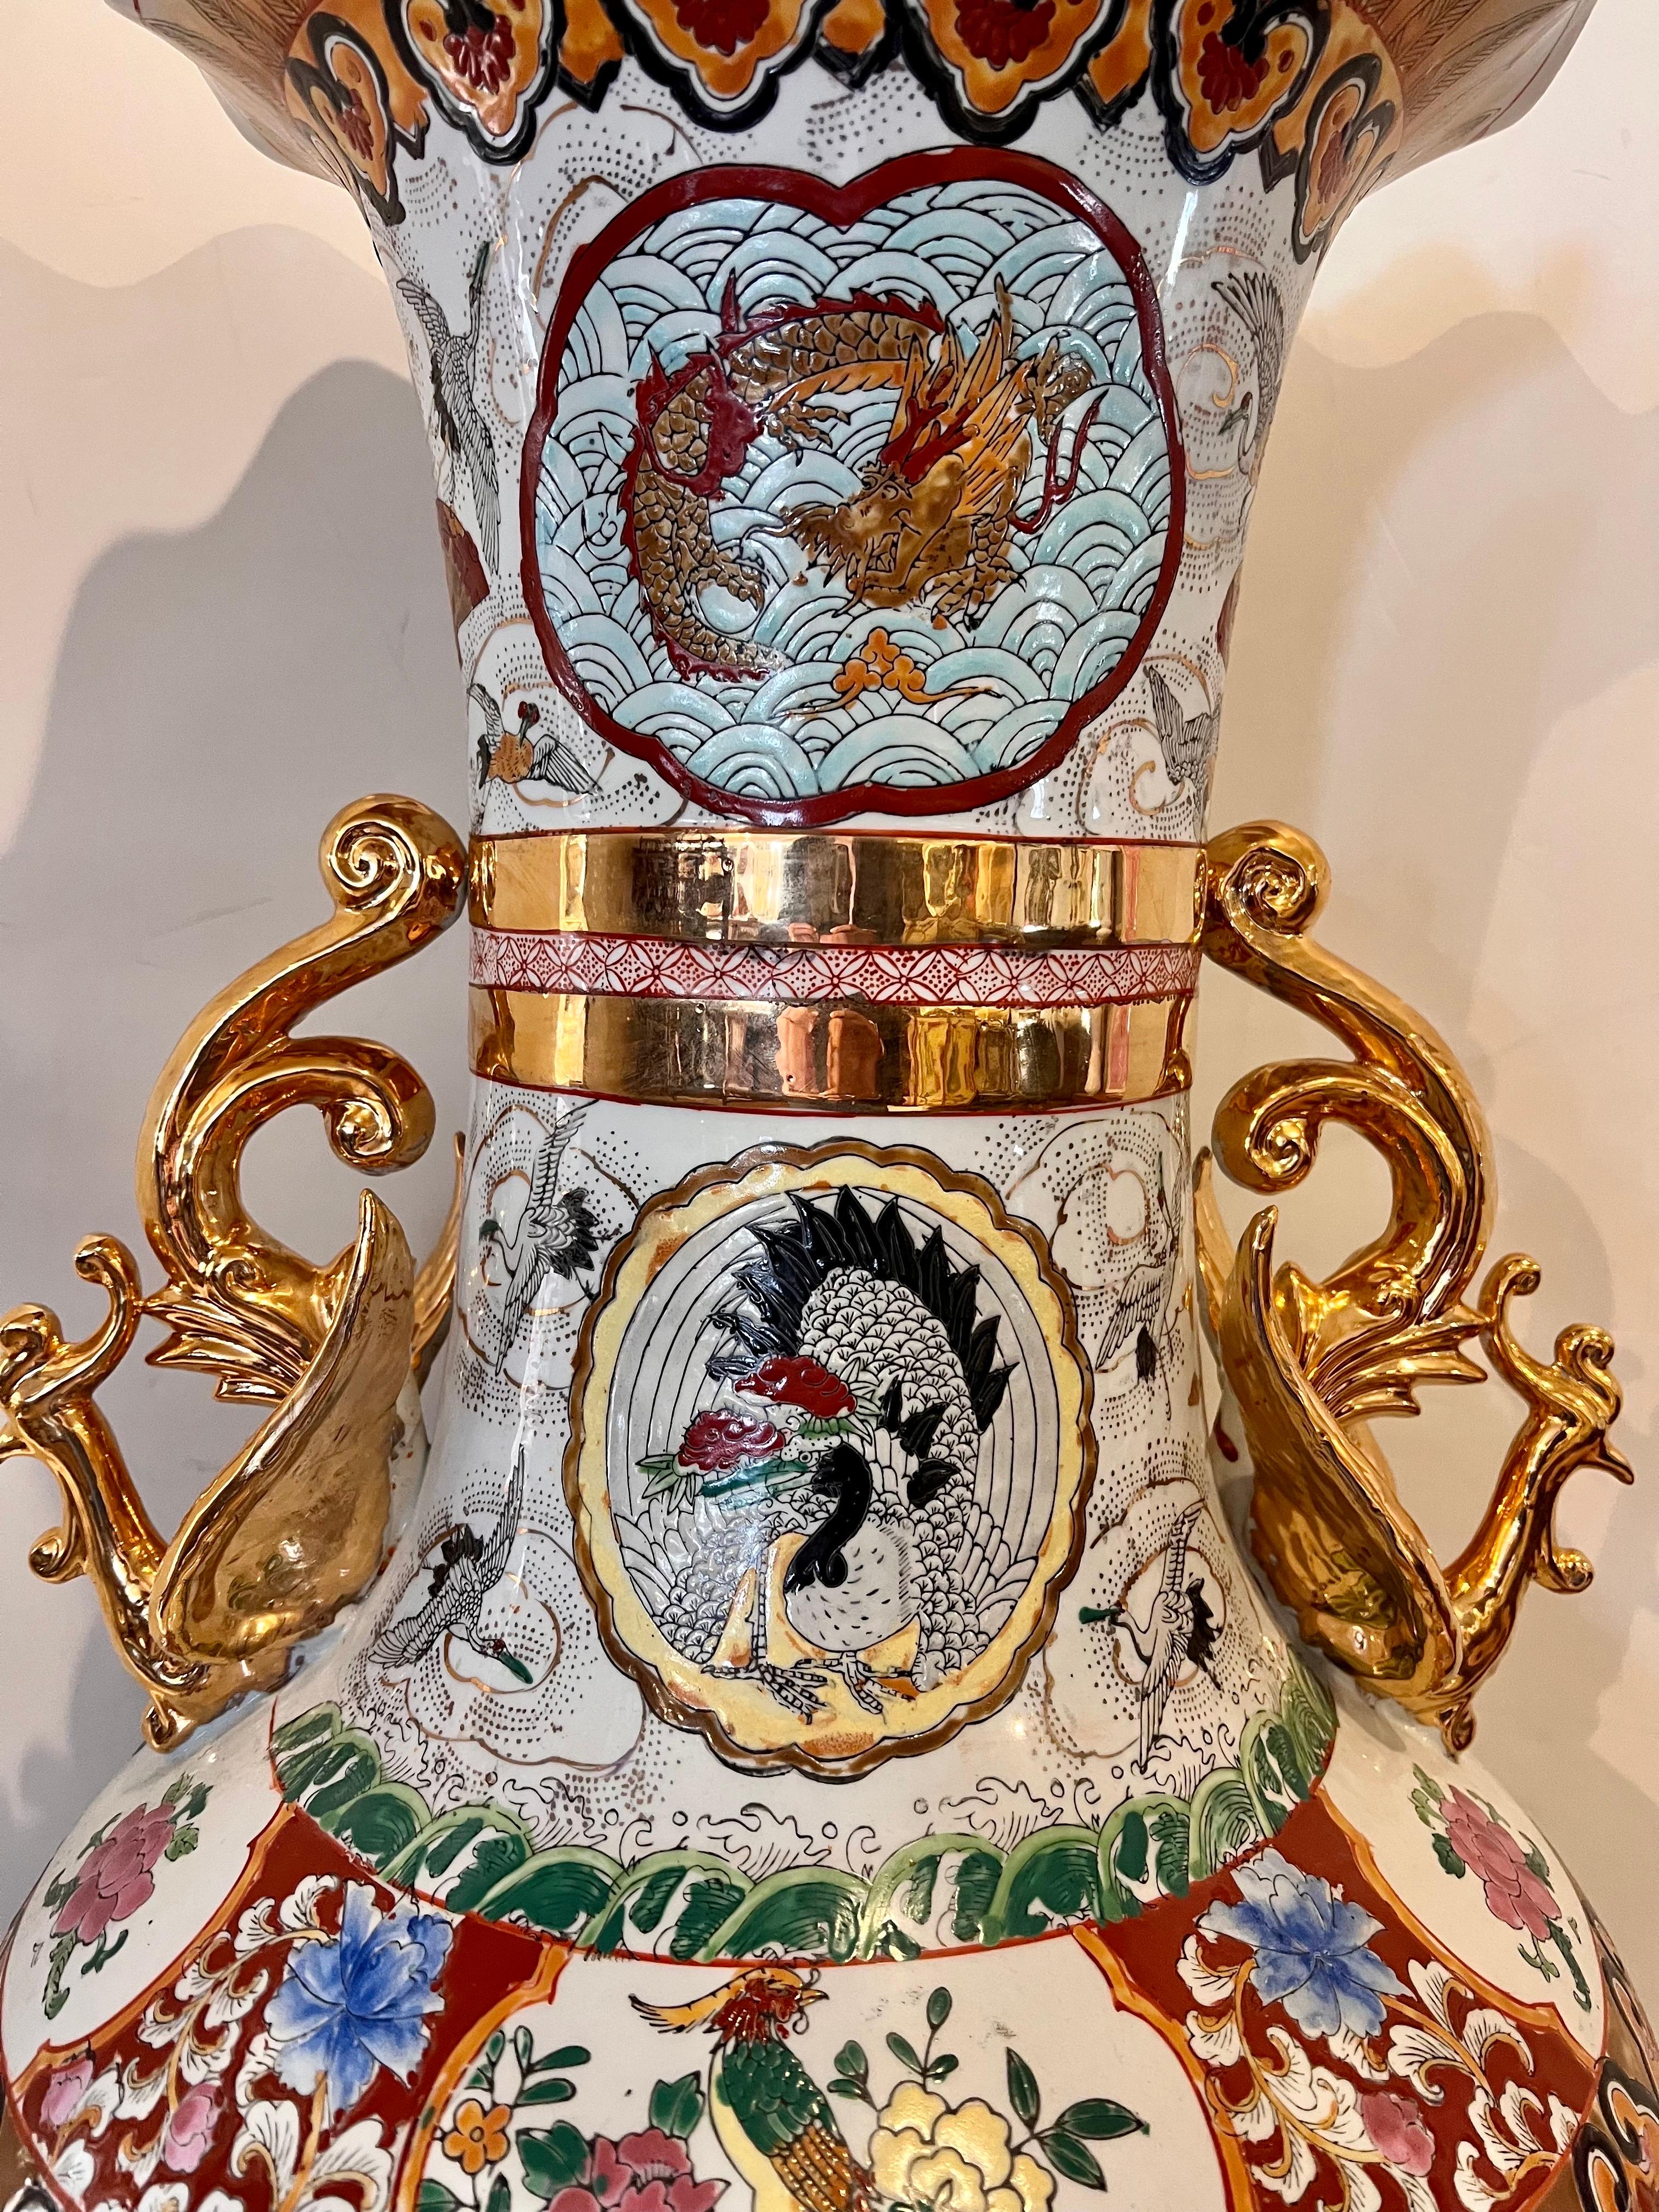 Extra Tall Palace Sized Extra Large Colorful Chinese Porcelain Vase Urn 1